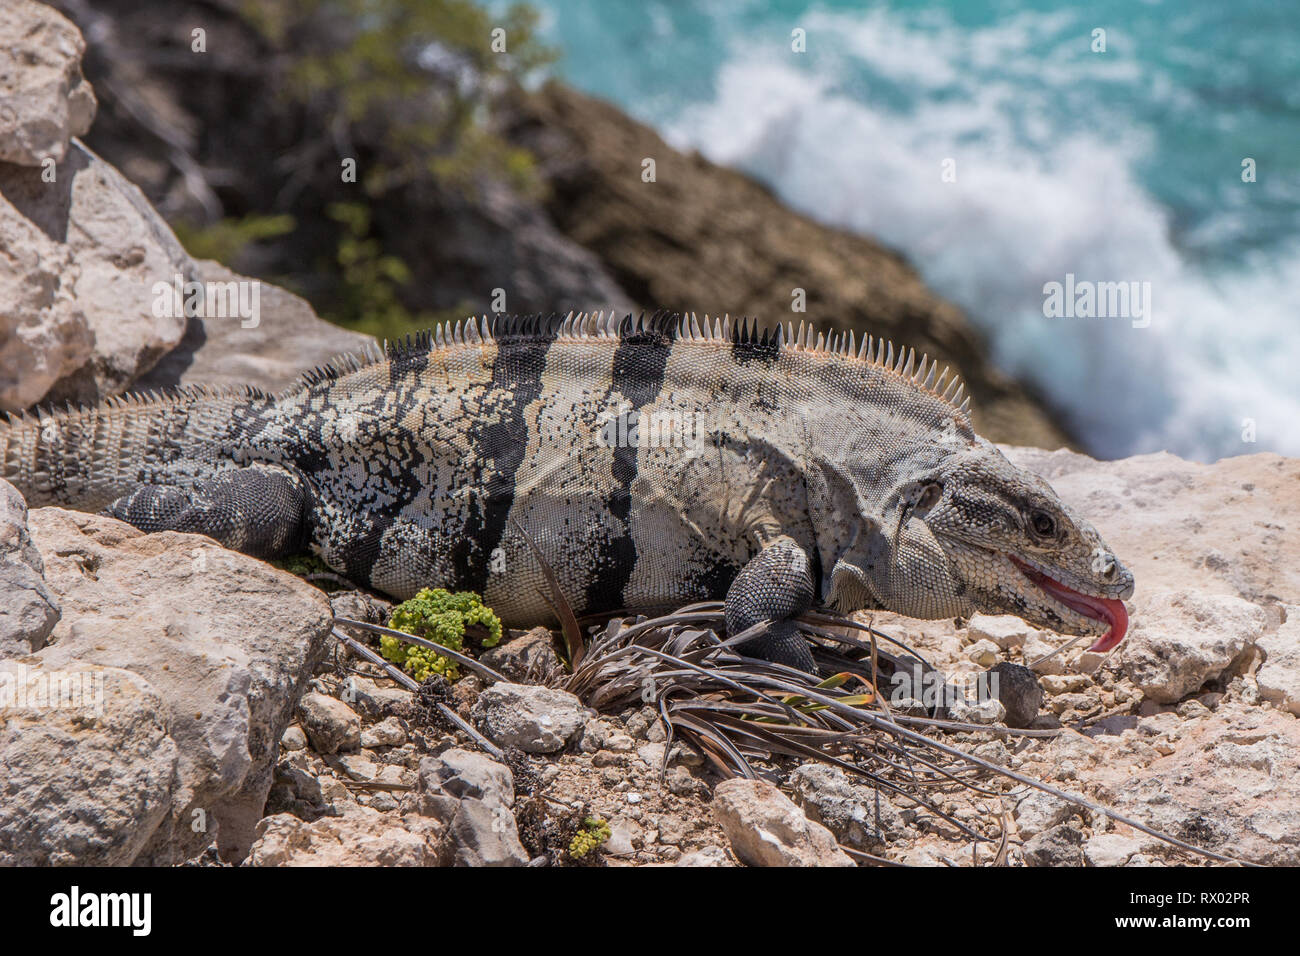 iguana sunning on a rocky ocean beach Stock Photo